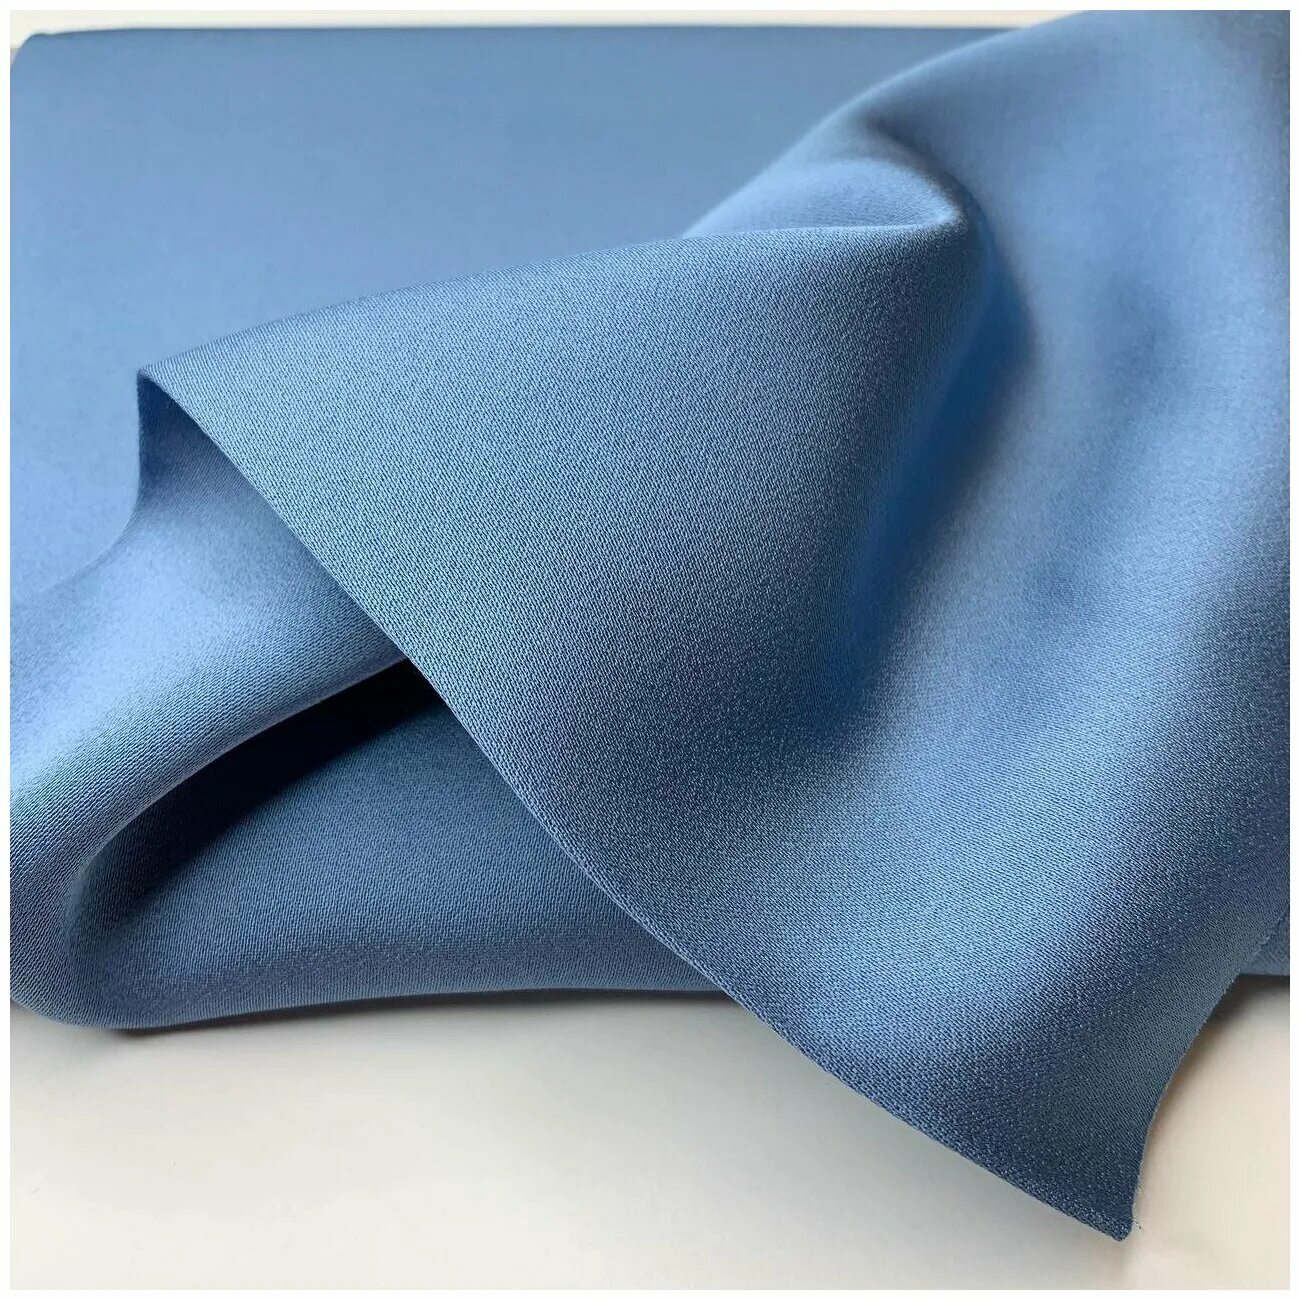 Вискоза кади. Вискоза голубого цвета. Плательная ткань серо голубых тонов. Итальянская платяная ткань для платья пыльно-синего цвета аляпистая.